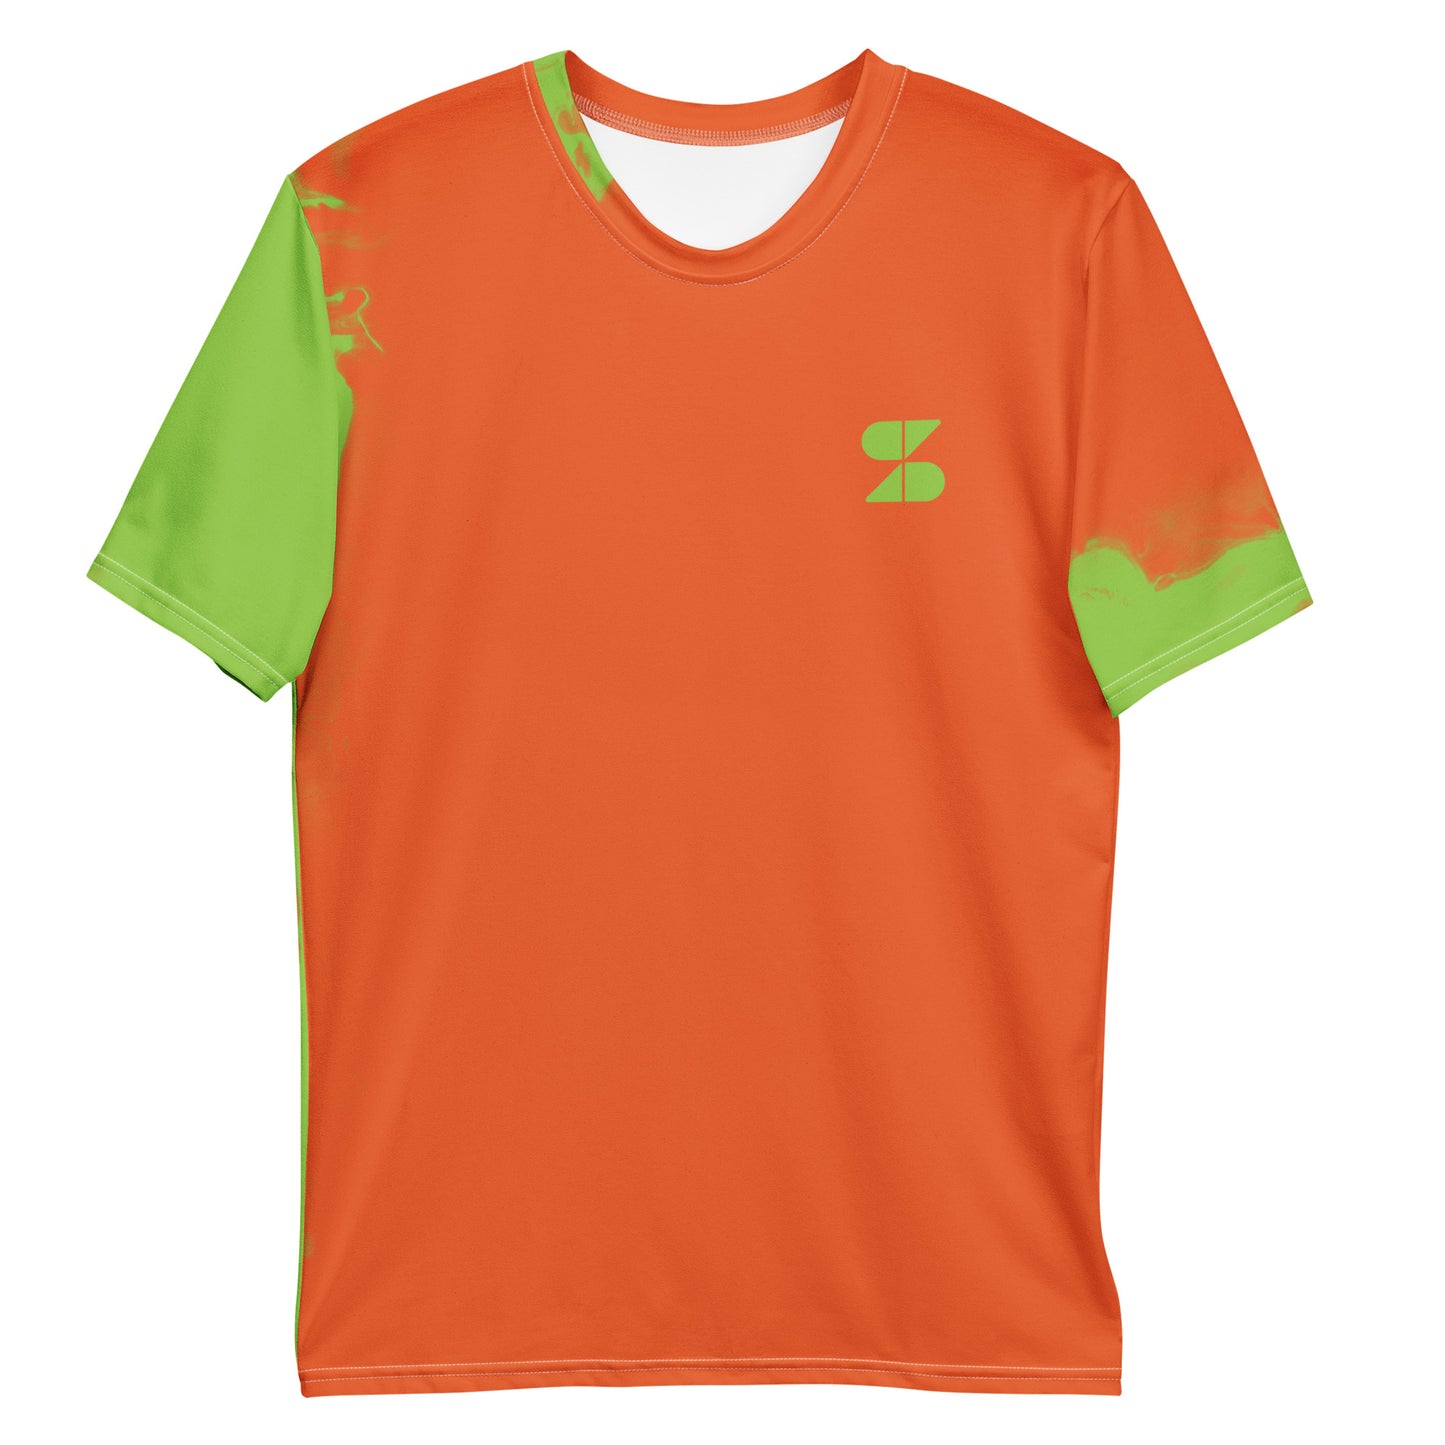 SIRKRIS "Morgen Wordt Het Beter" Oranje T-shirt